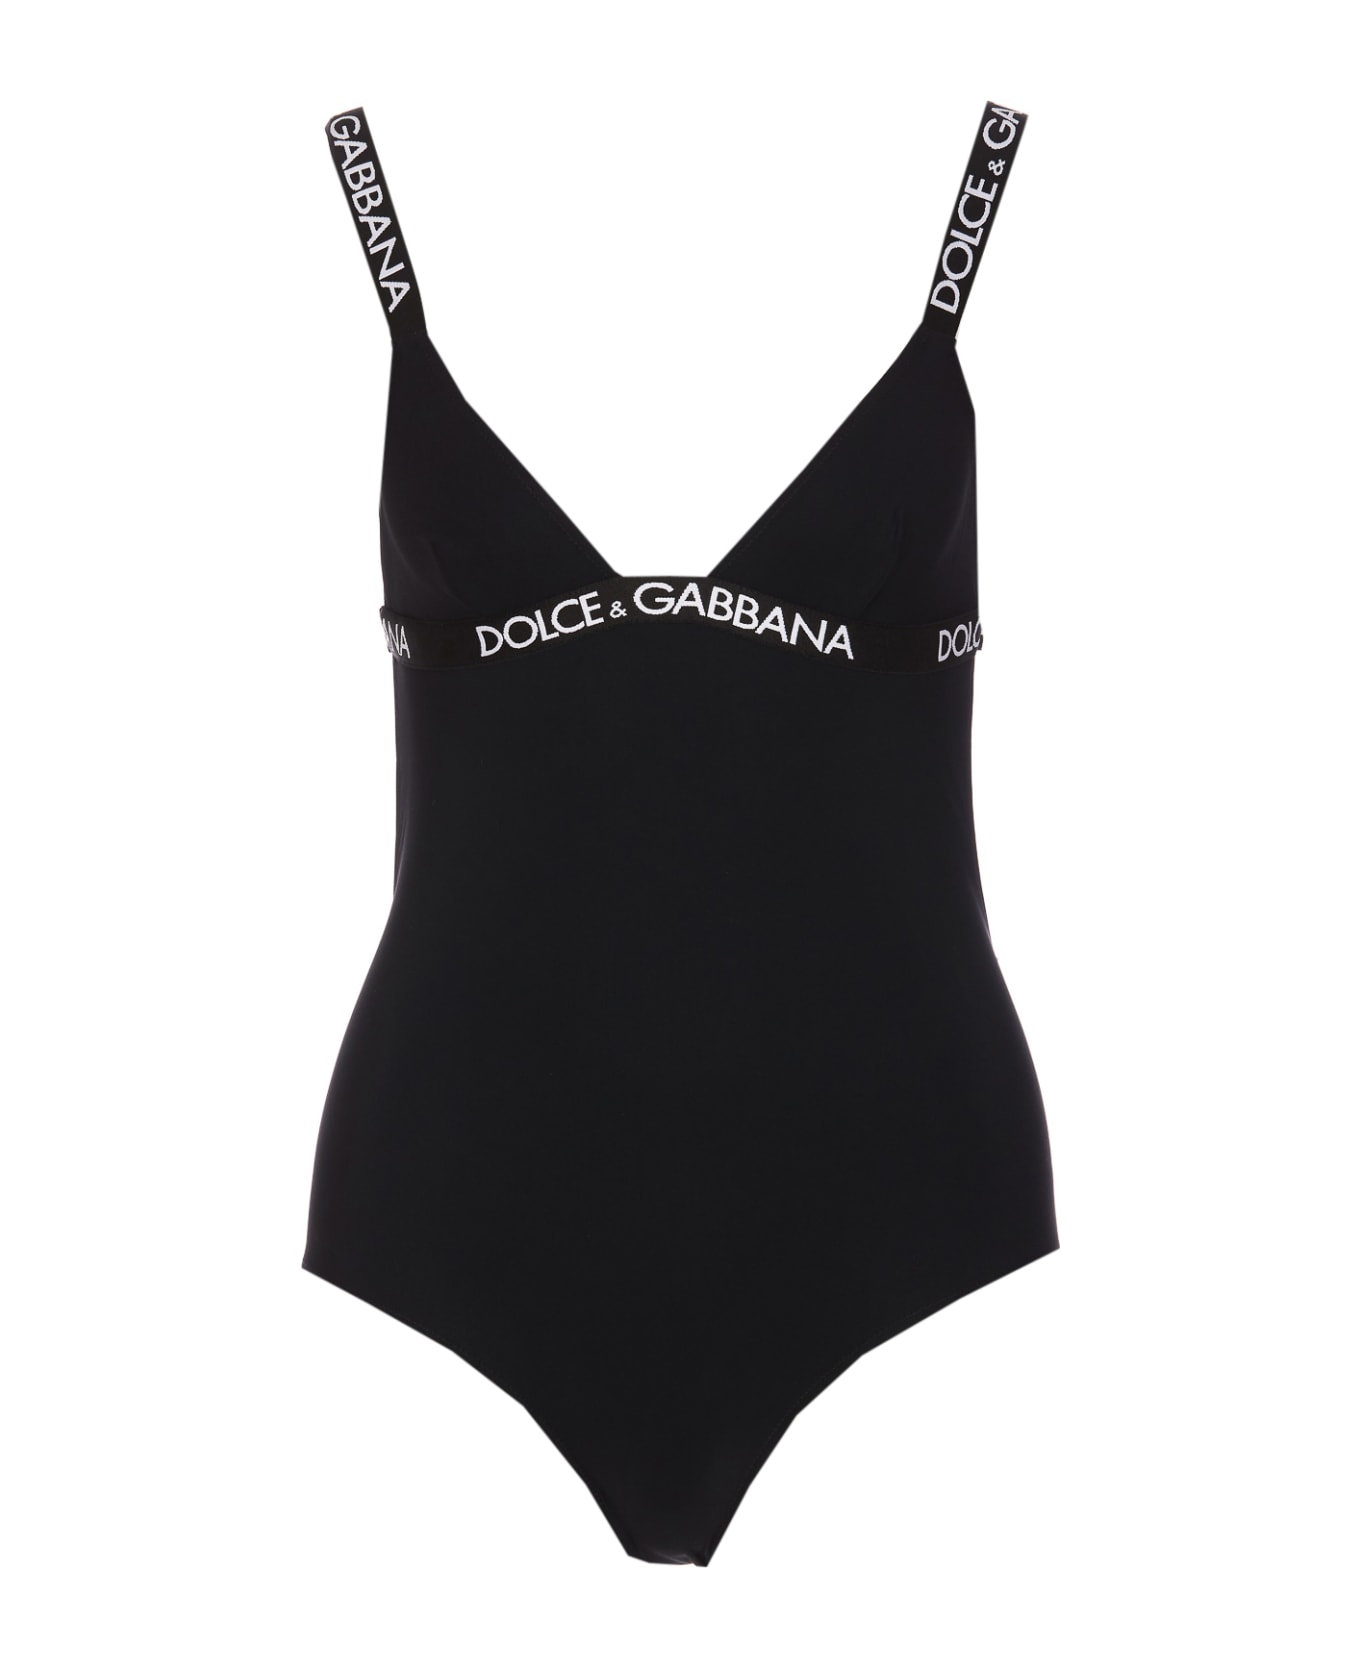 Dolce & Gabbana Logo One Piece Swimwear - Black